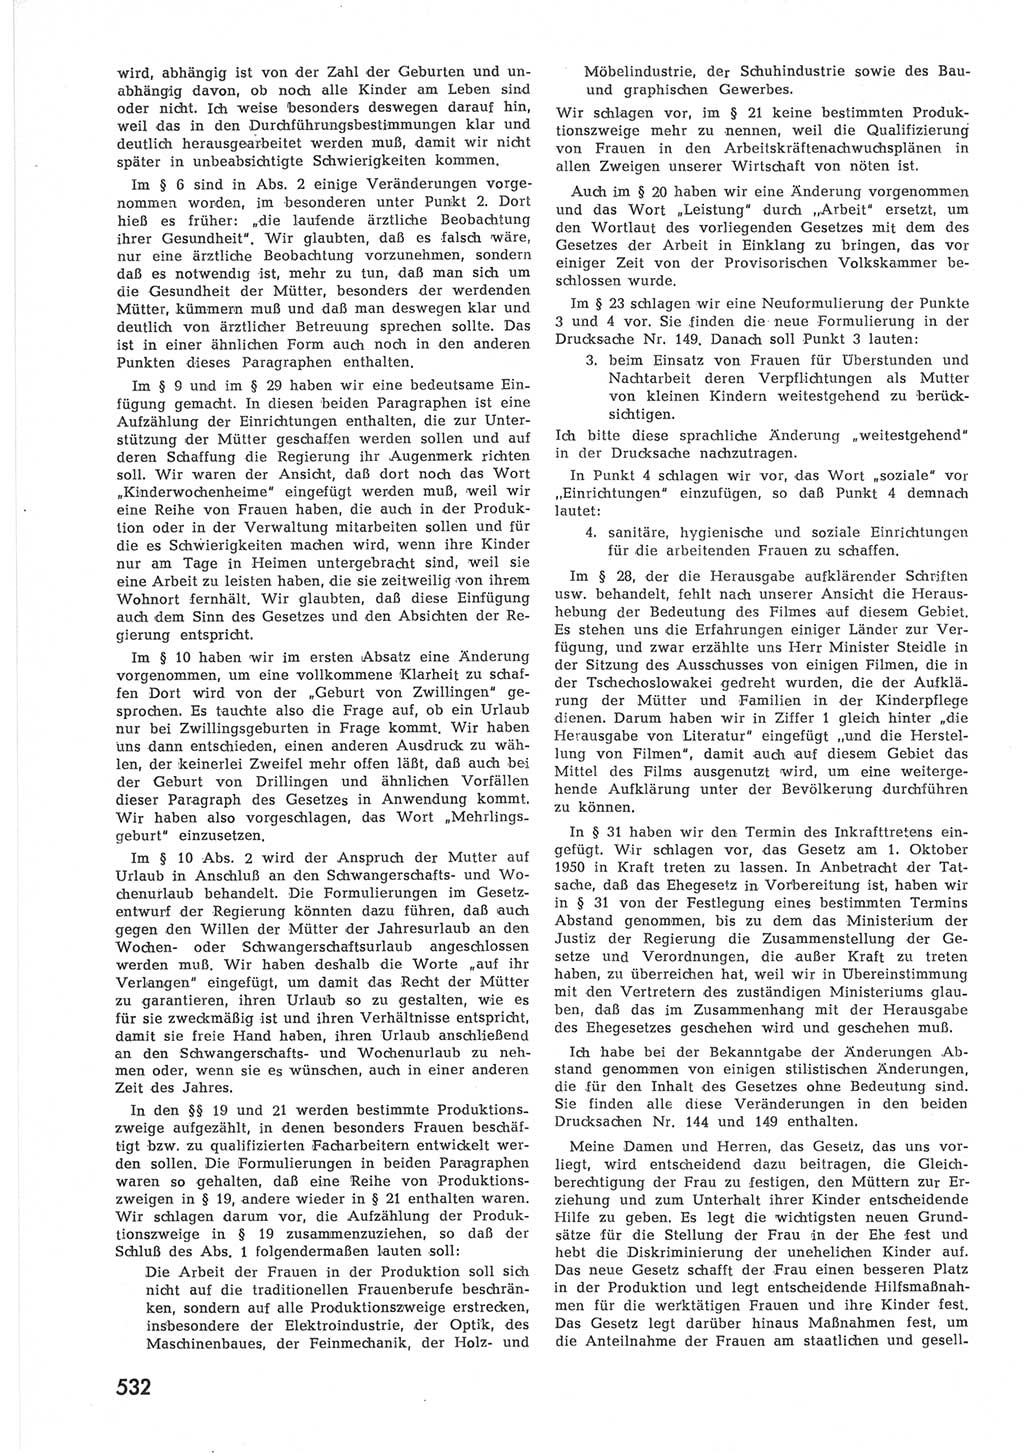 Provisorische Volkskammer (VK) der Deutschen Demokratischen Republik (DDR) 1949-1950, Dokument 550 (Prov. VK DDR 1949-1950, Dok. 550)